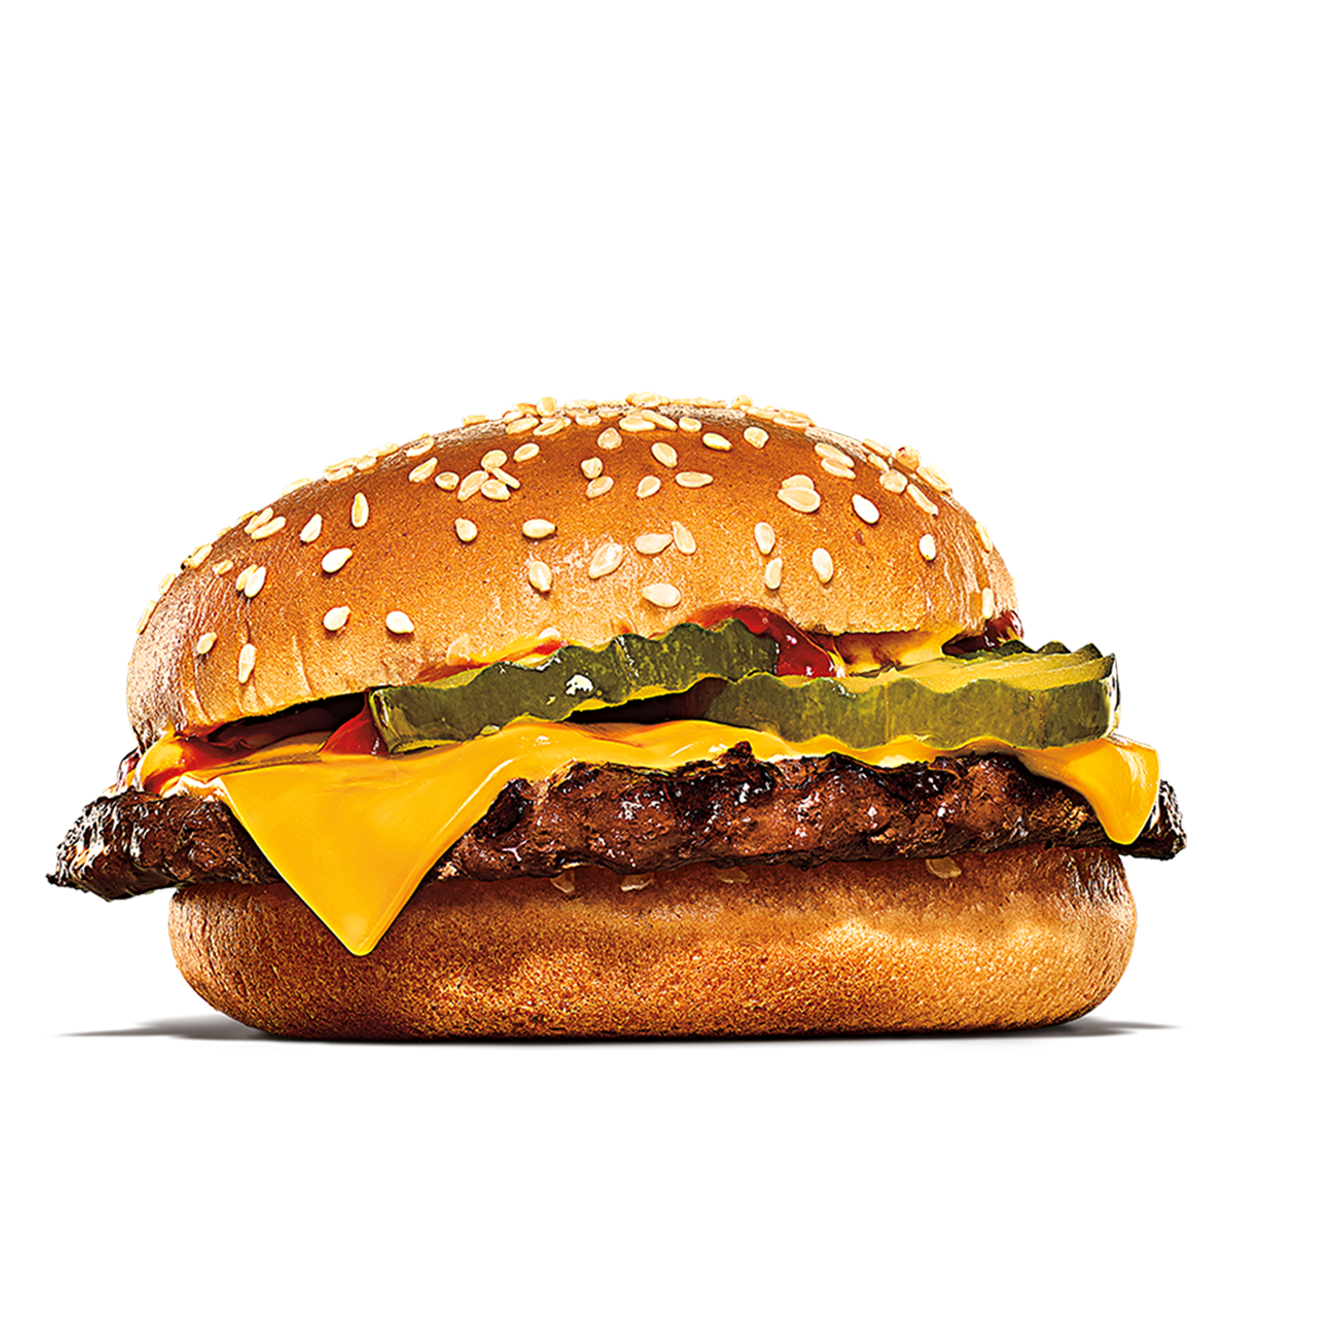 Burger King Pharr (956)702-9119